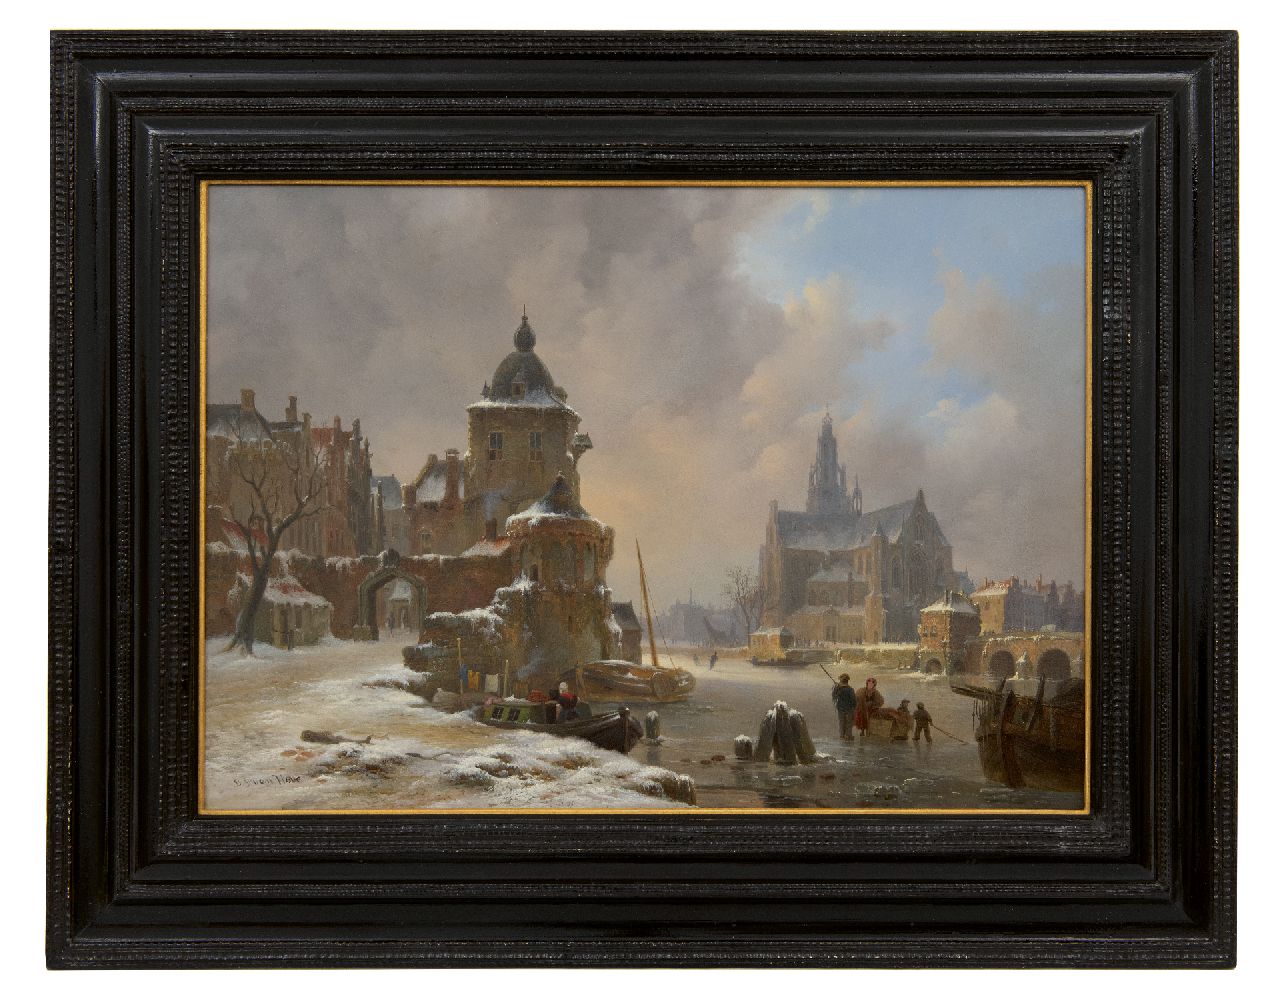 Hove B.J. van | Bartholomeus Johannes 'Bart' van Hove, Winters stadsgezicht met bevroren rivier, olieverf op paneel 34,2 x 48,5 cm, gesigneerd linksonder